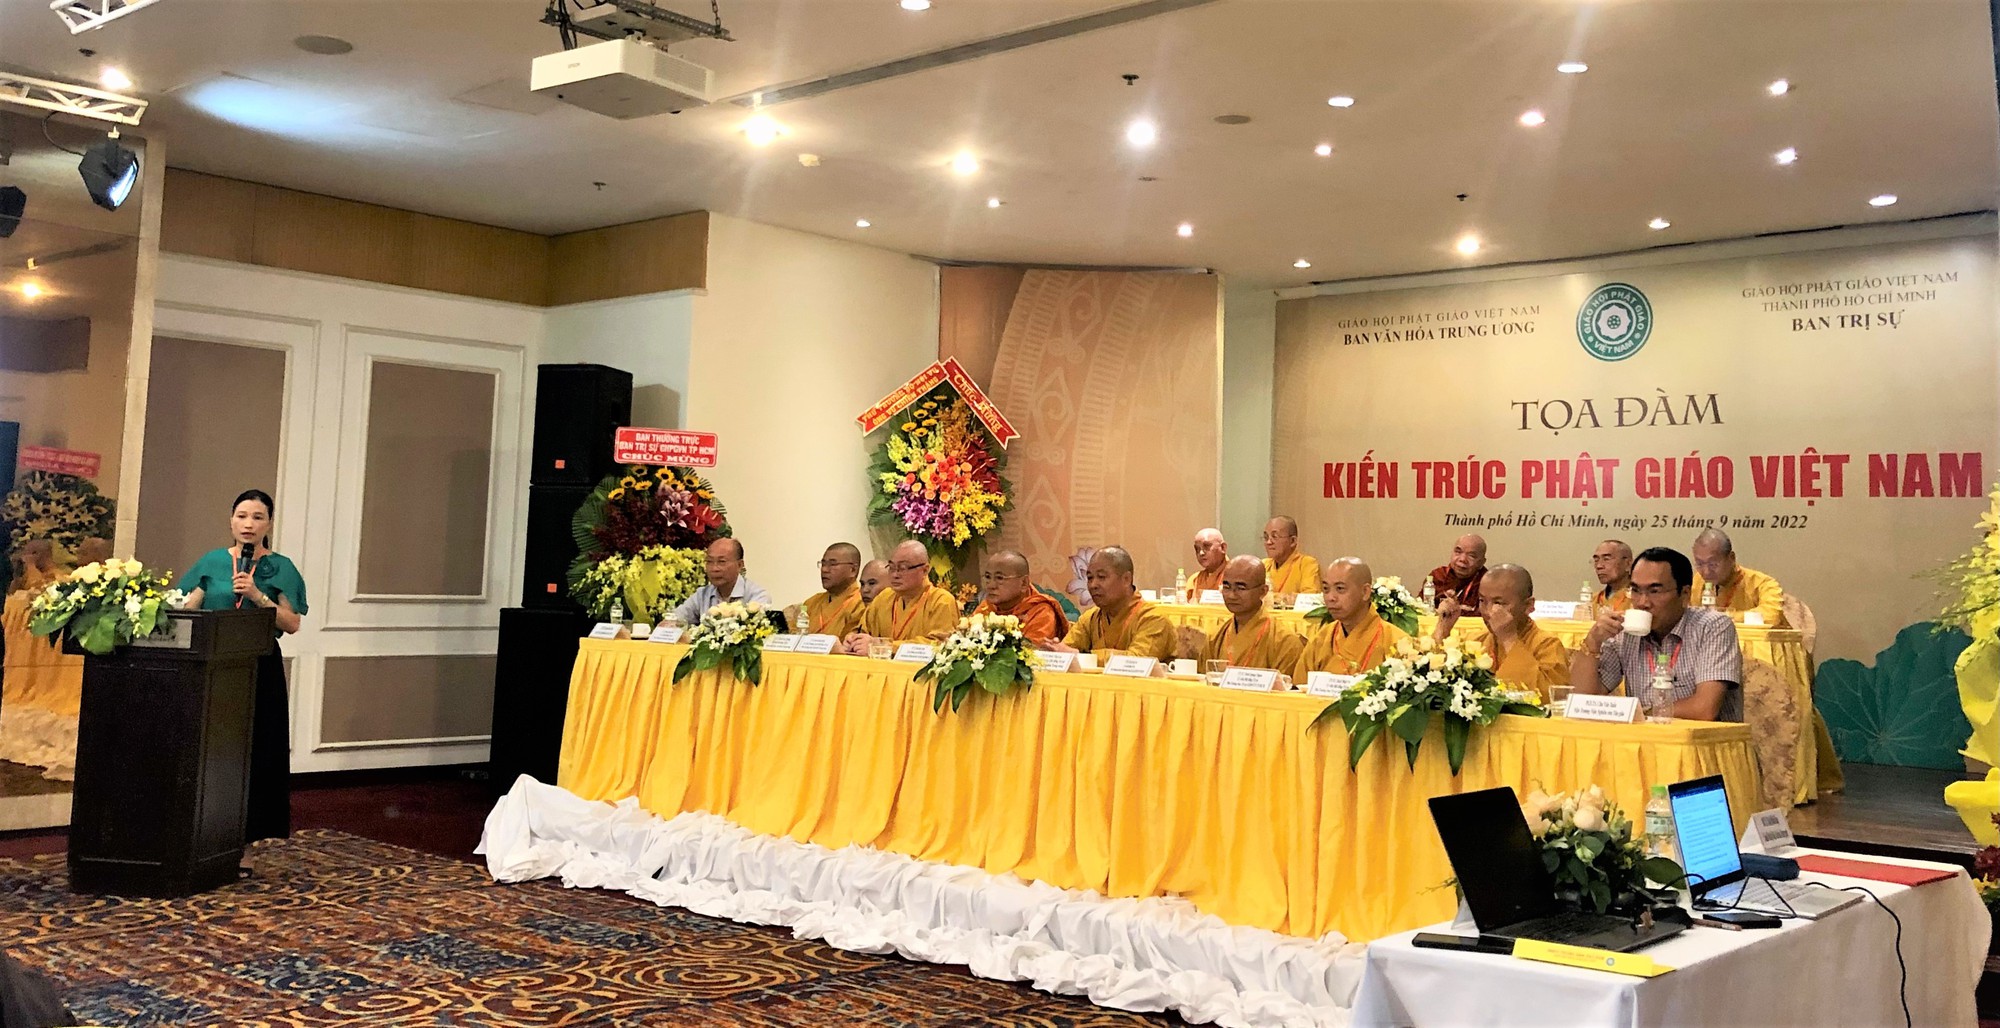 Bảo tàng lịch sử quốc gia tham gia khảo sát kiến trúc, di sản văn hóa Phật giáo Việt Nam tại các tỉnh Nam Bộ - Ảnh 2.